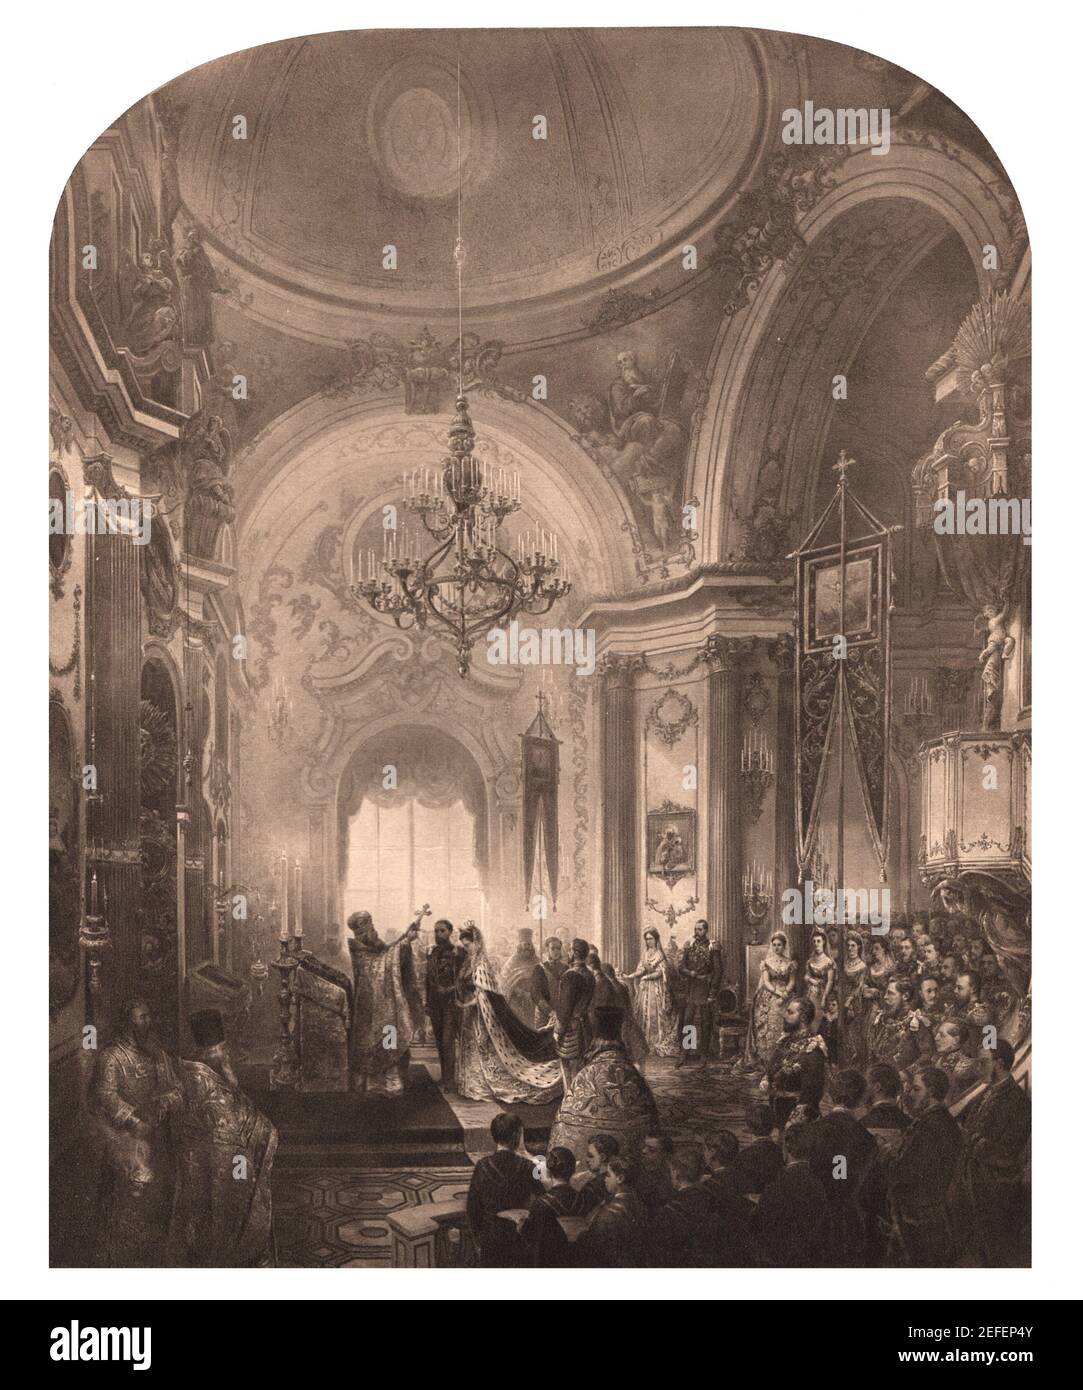 Mariage du duc d'Édimbourg, du prince Alfred de la maison de Saxe-Coburg et de Gotha à la Grande Duchesse Maria Alexandrovna de Russie, 23 janvier 1874 Banque D'Images